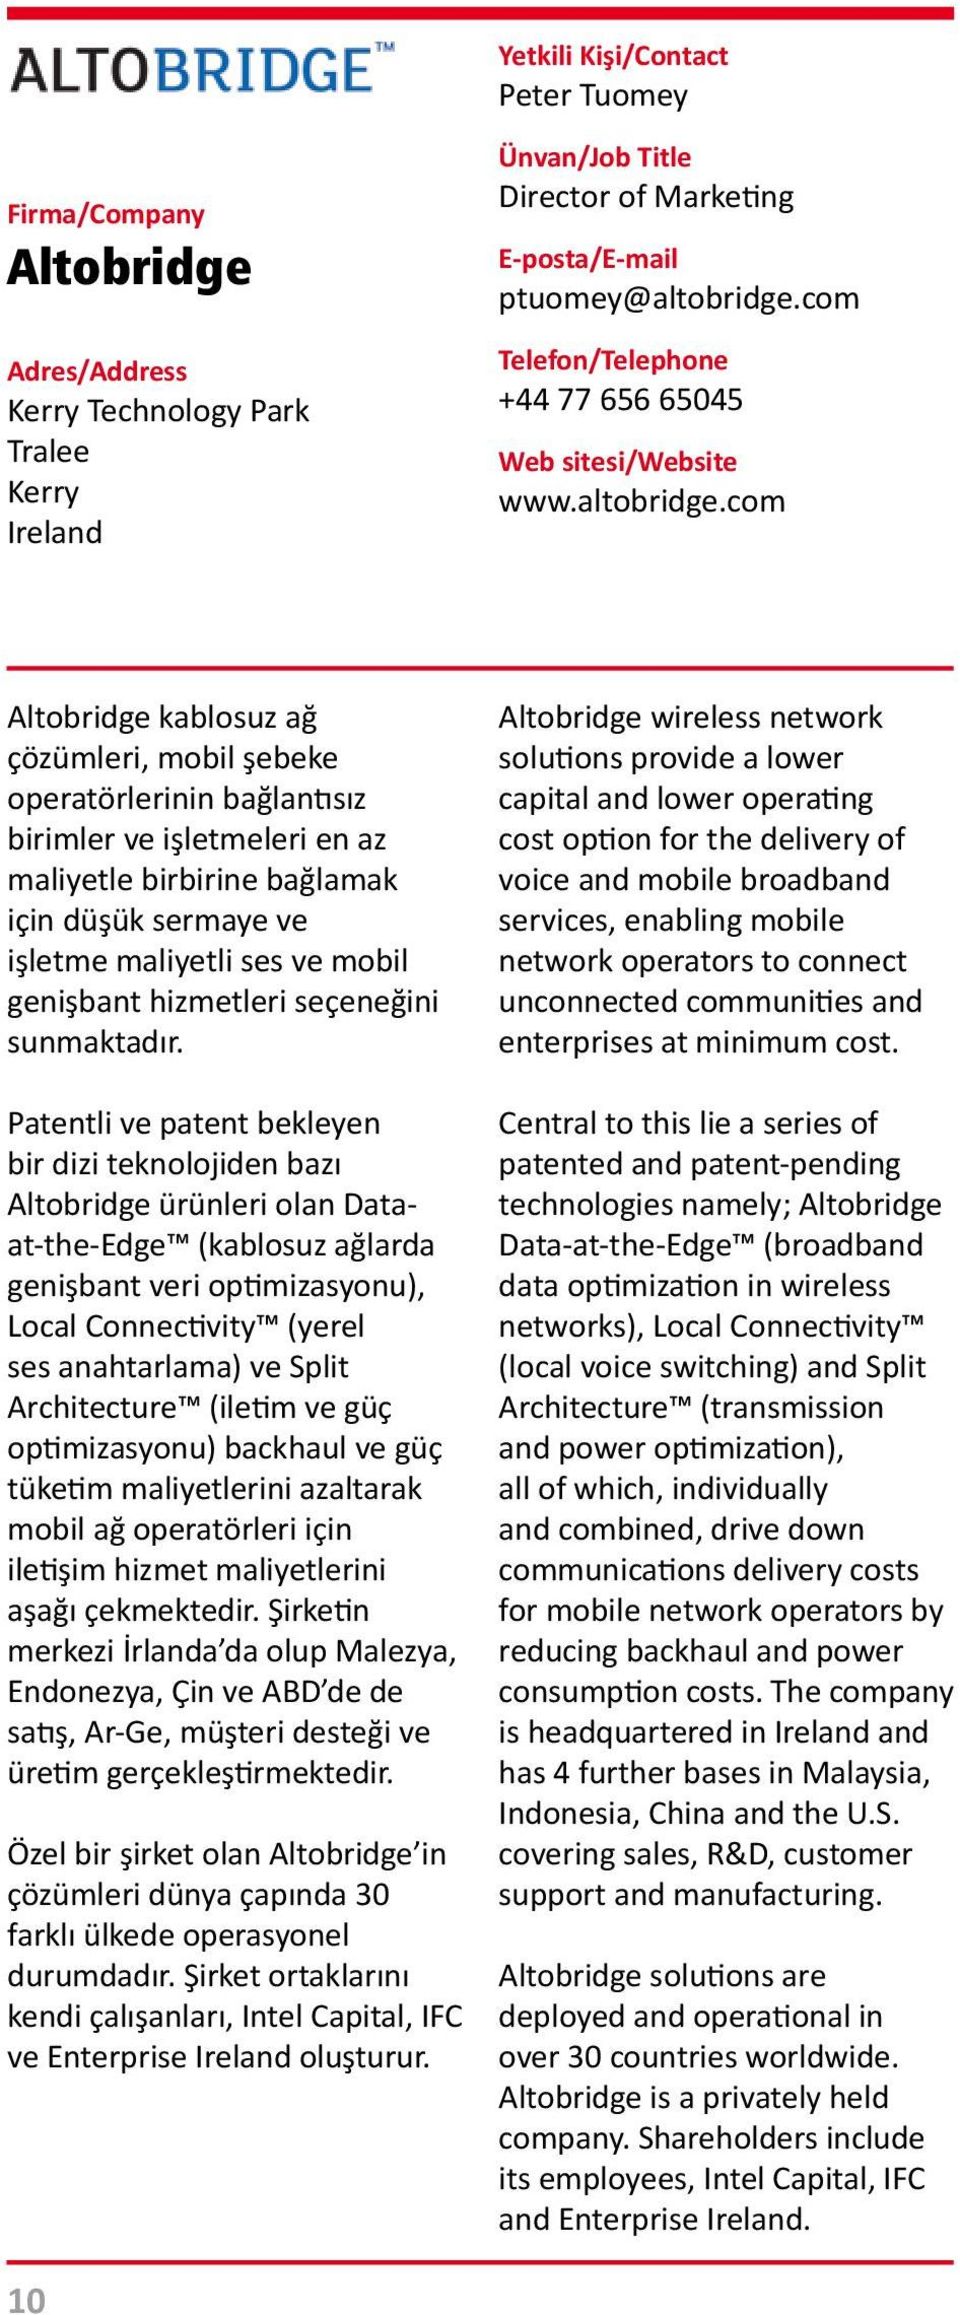 com Altobridge kablosuz ağ çözümleri, mobil şebeke operatörlerinin bağlantısız birimler ve işletmeleri en az maliyetle birbirine bağlamak için düşük sermaye ve işletme maliyetli ses ve mobil